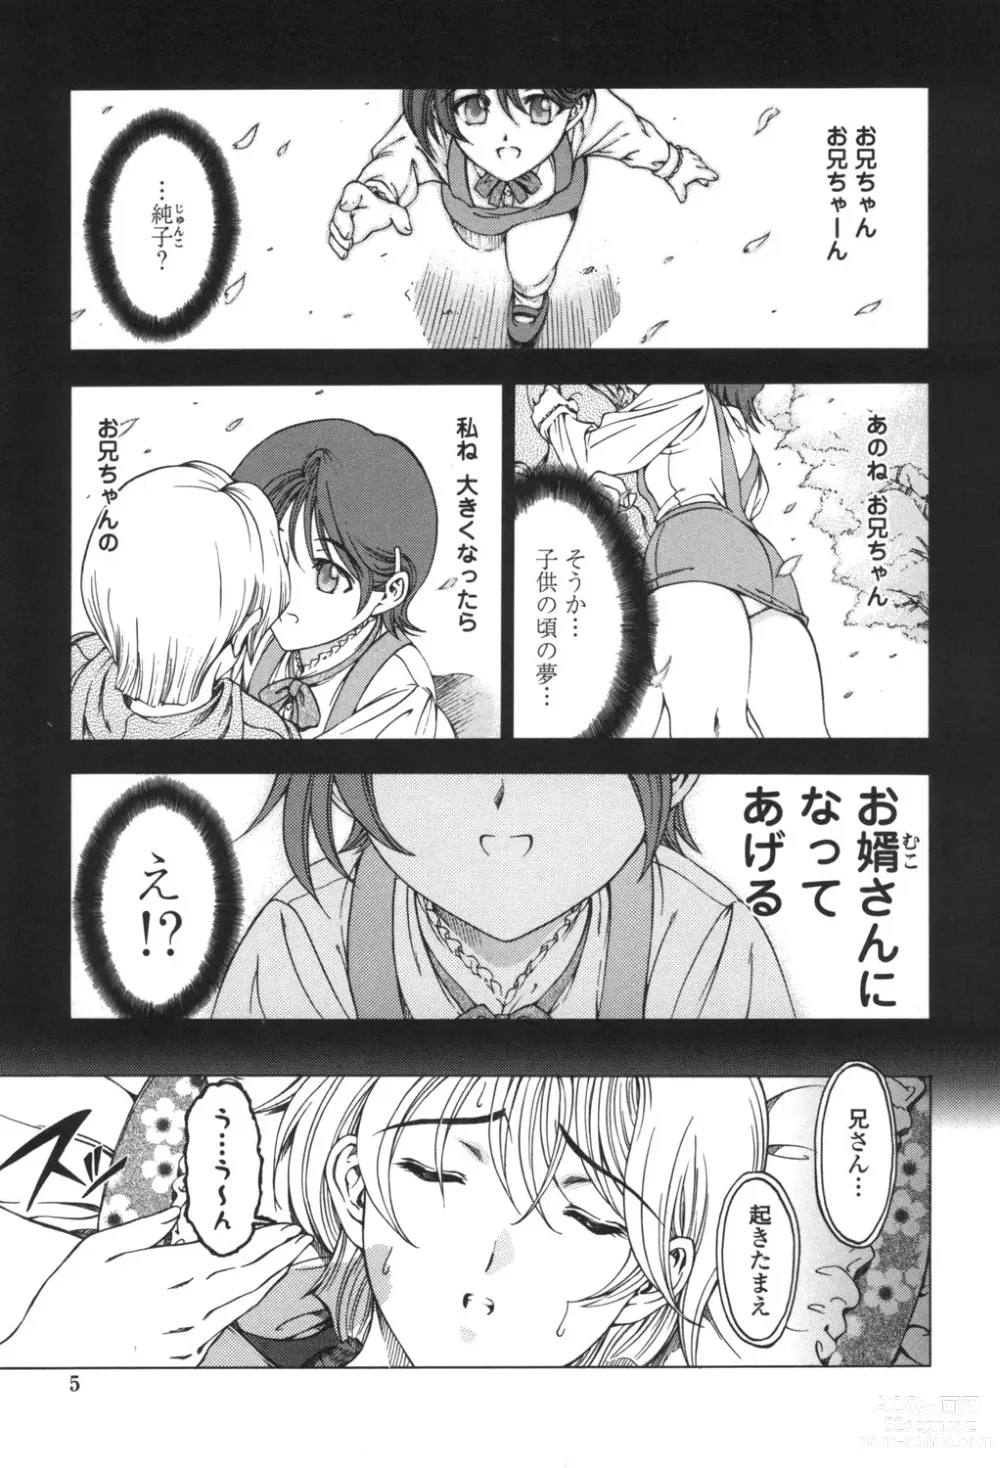 Page 6 of manga Maruimo!?